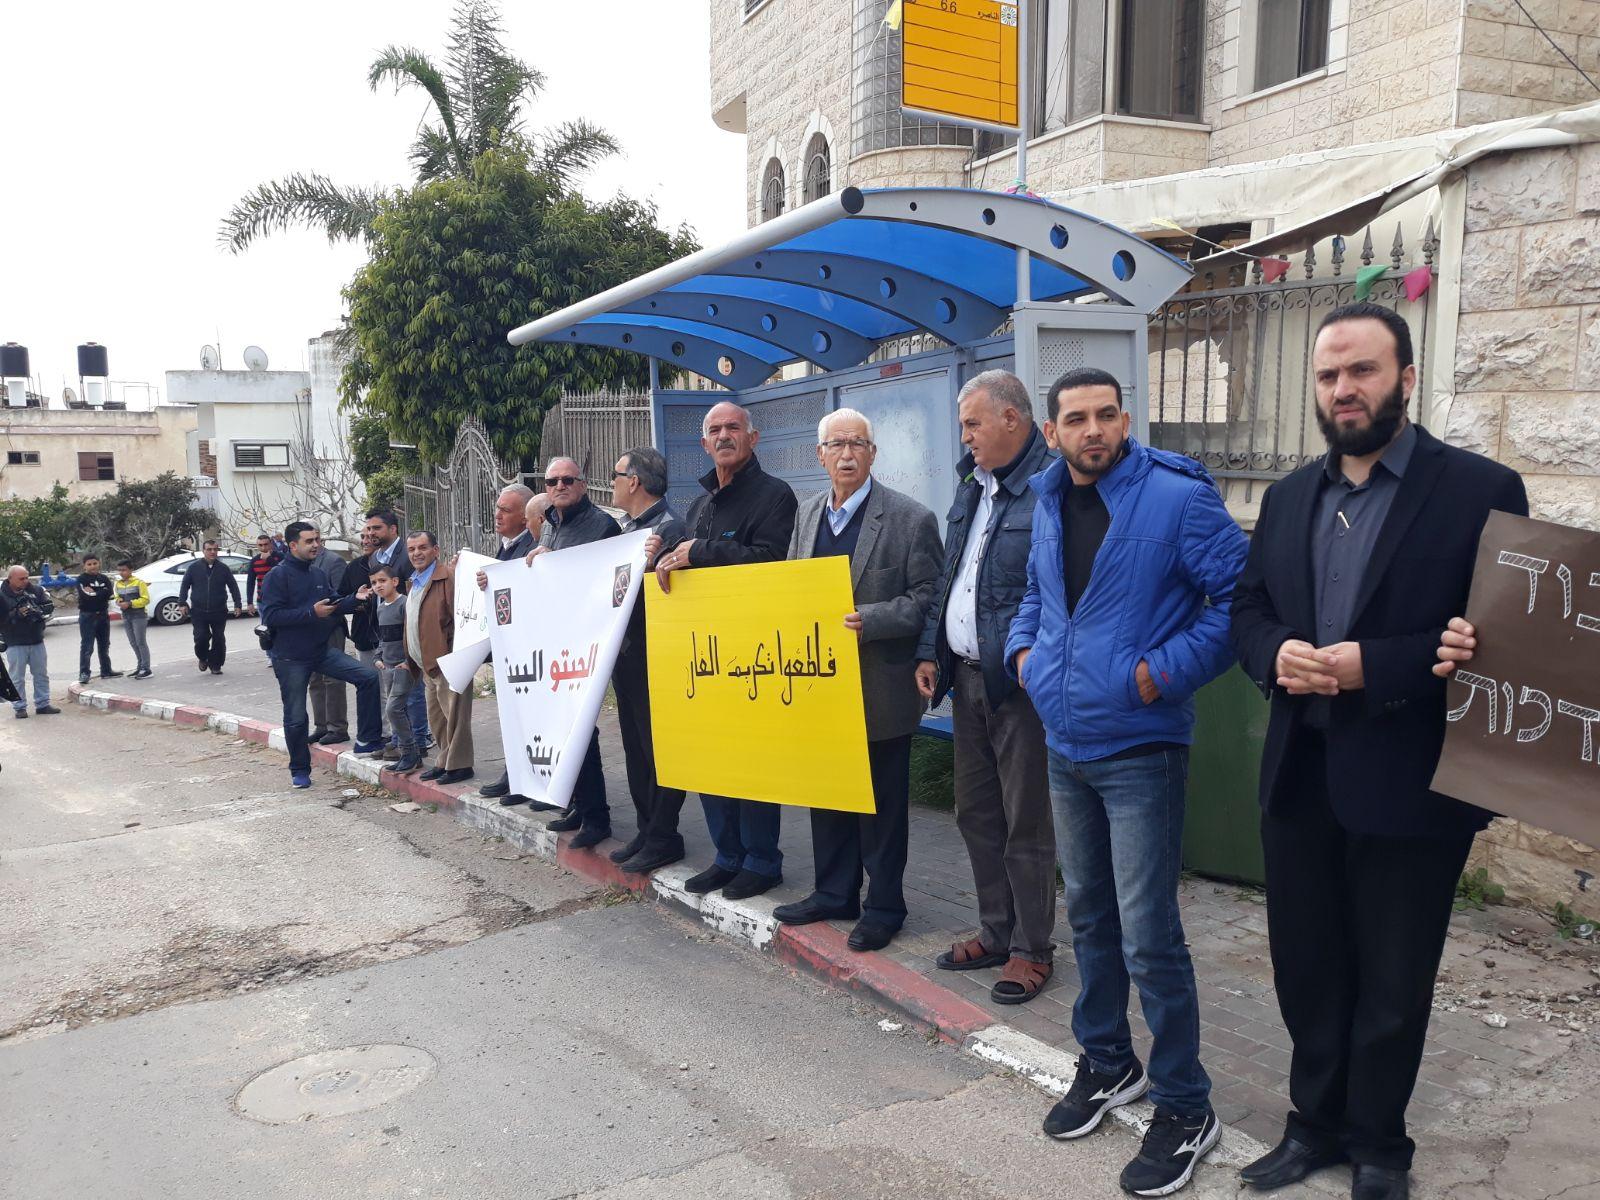  بركة: يتحتّم على فلسطينيي الداخل استقبال نتنياهو   بالصرامي على وجهه   2017122812192114